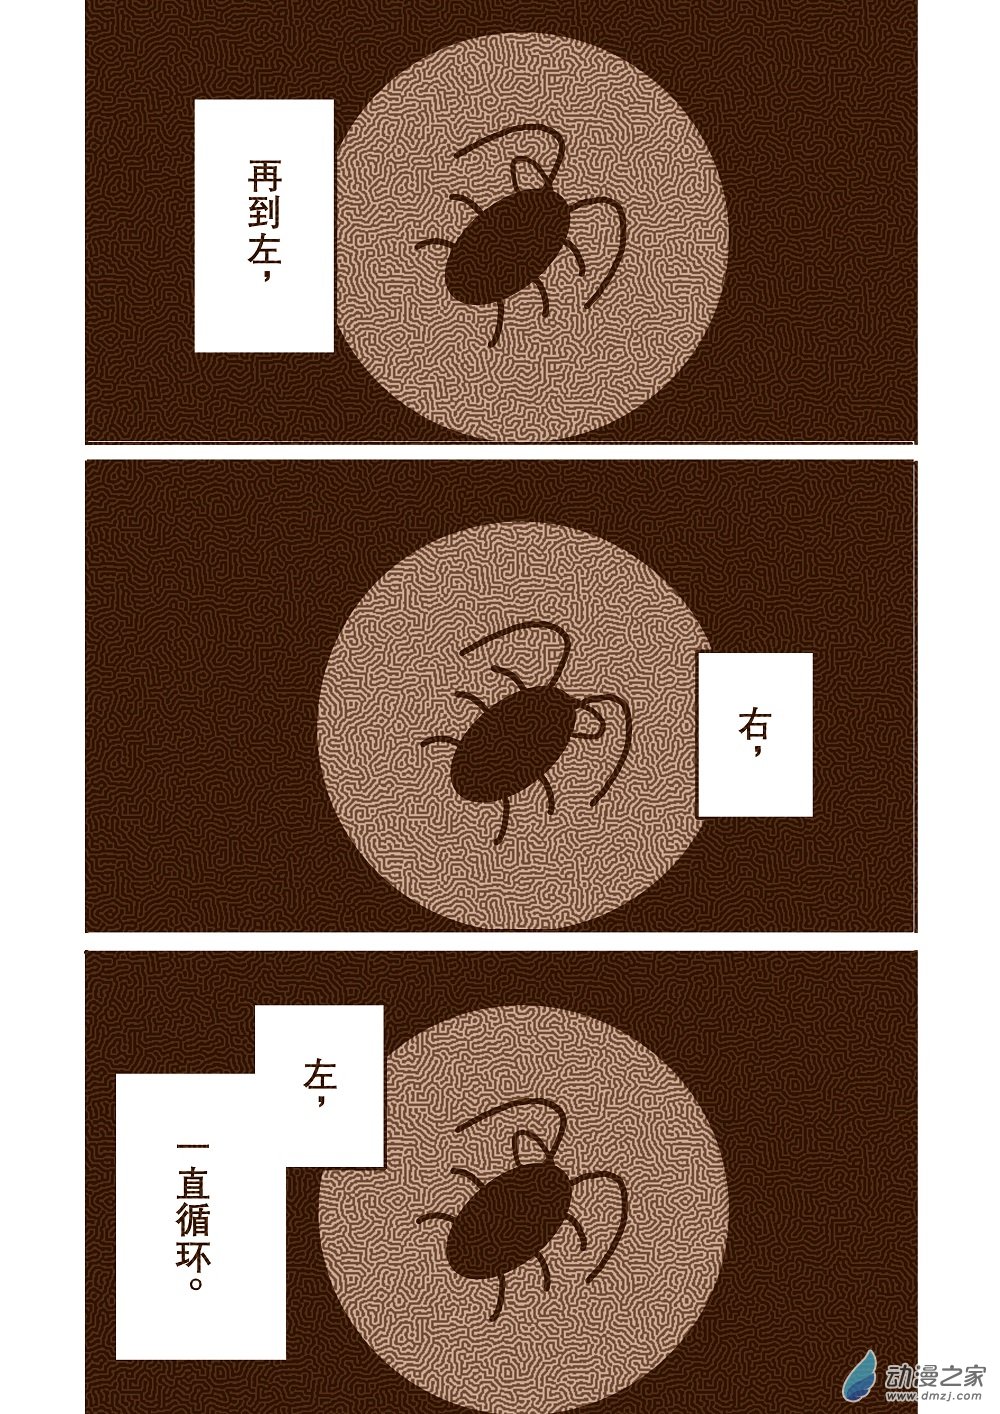 蟑螂 - 蟑螂 - 2